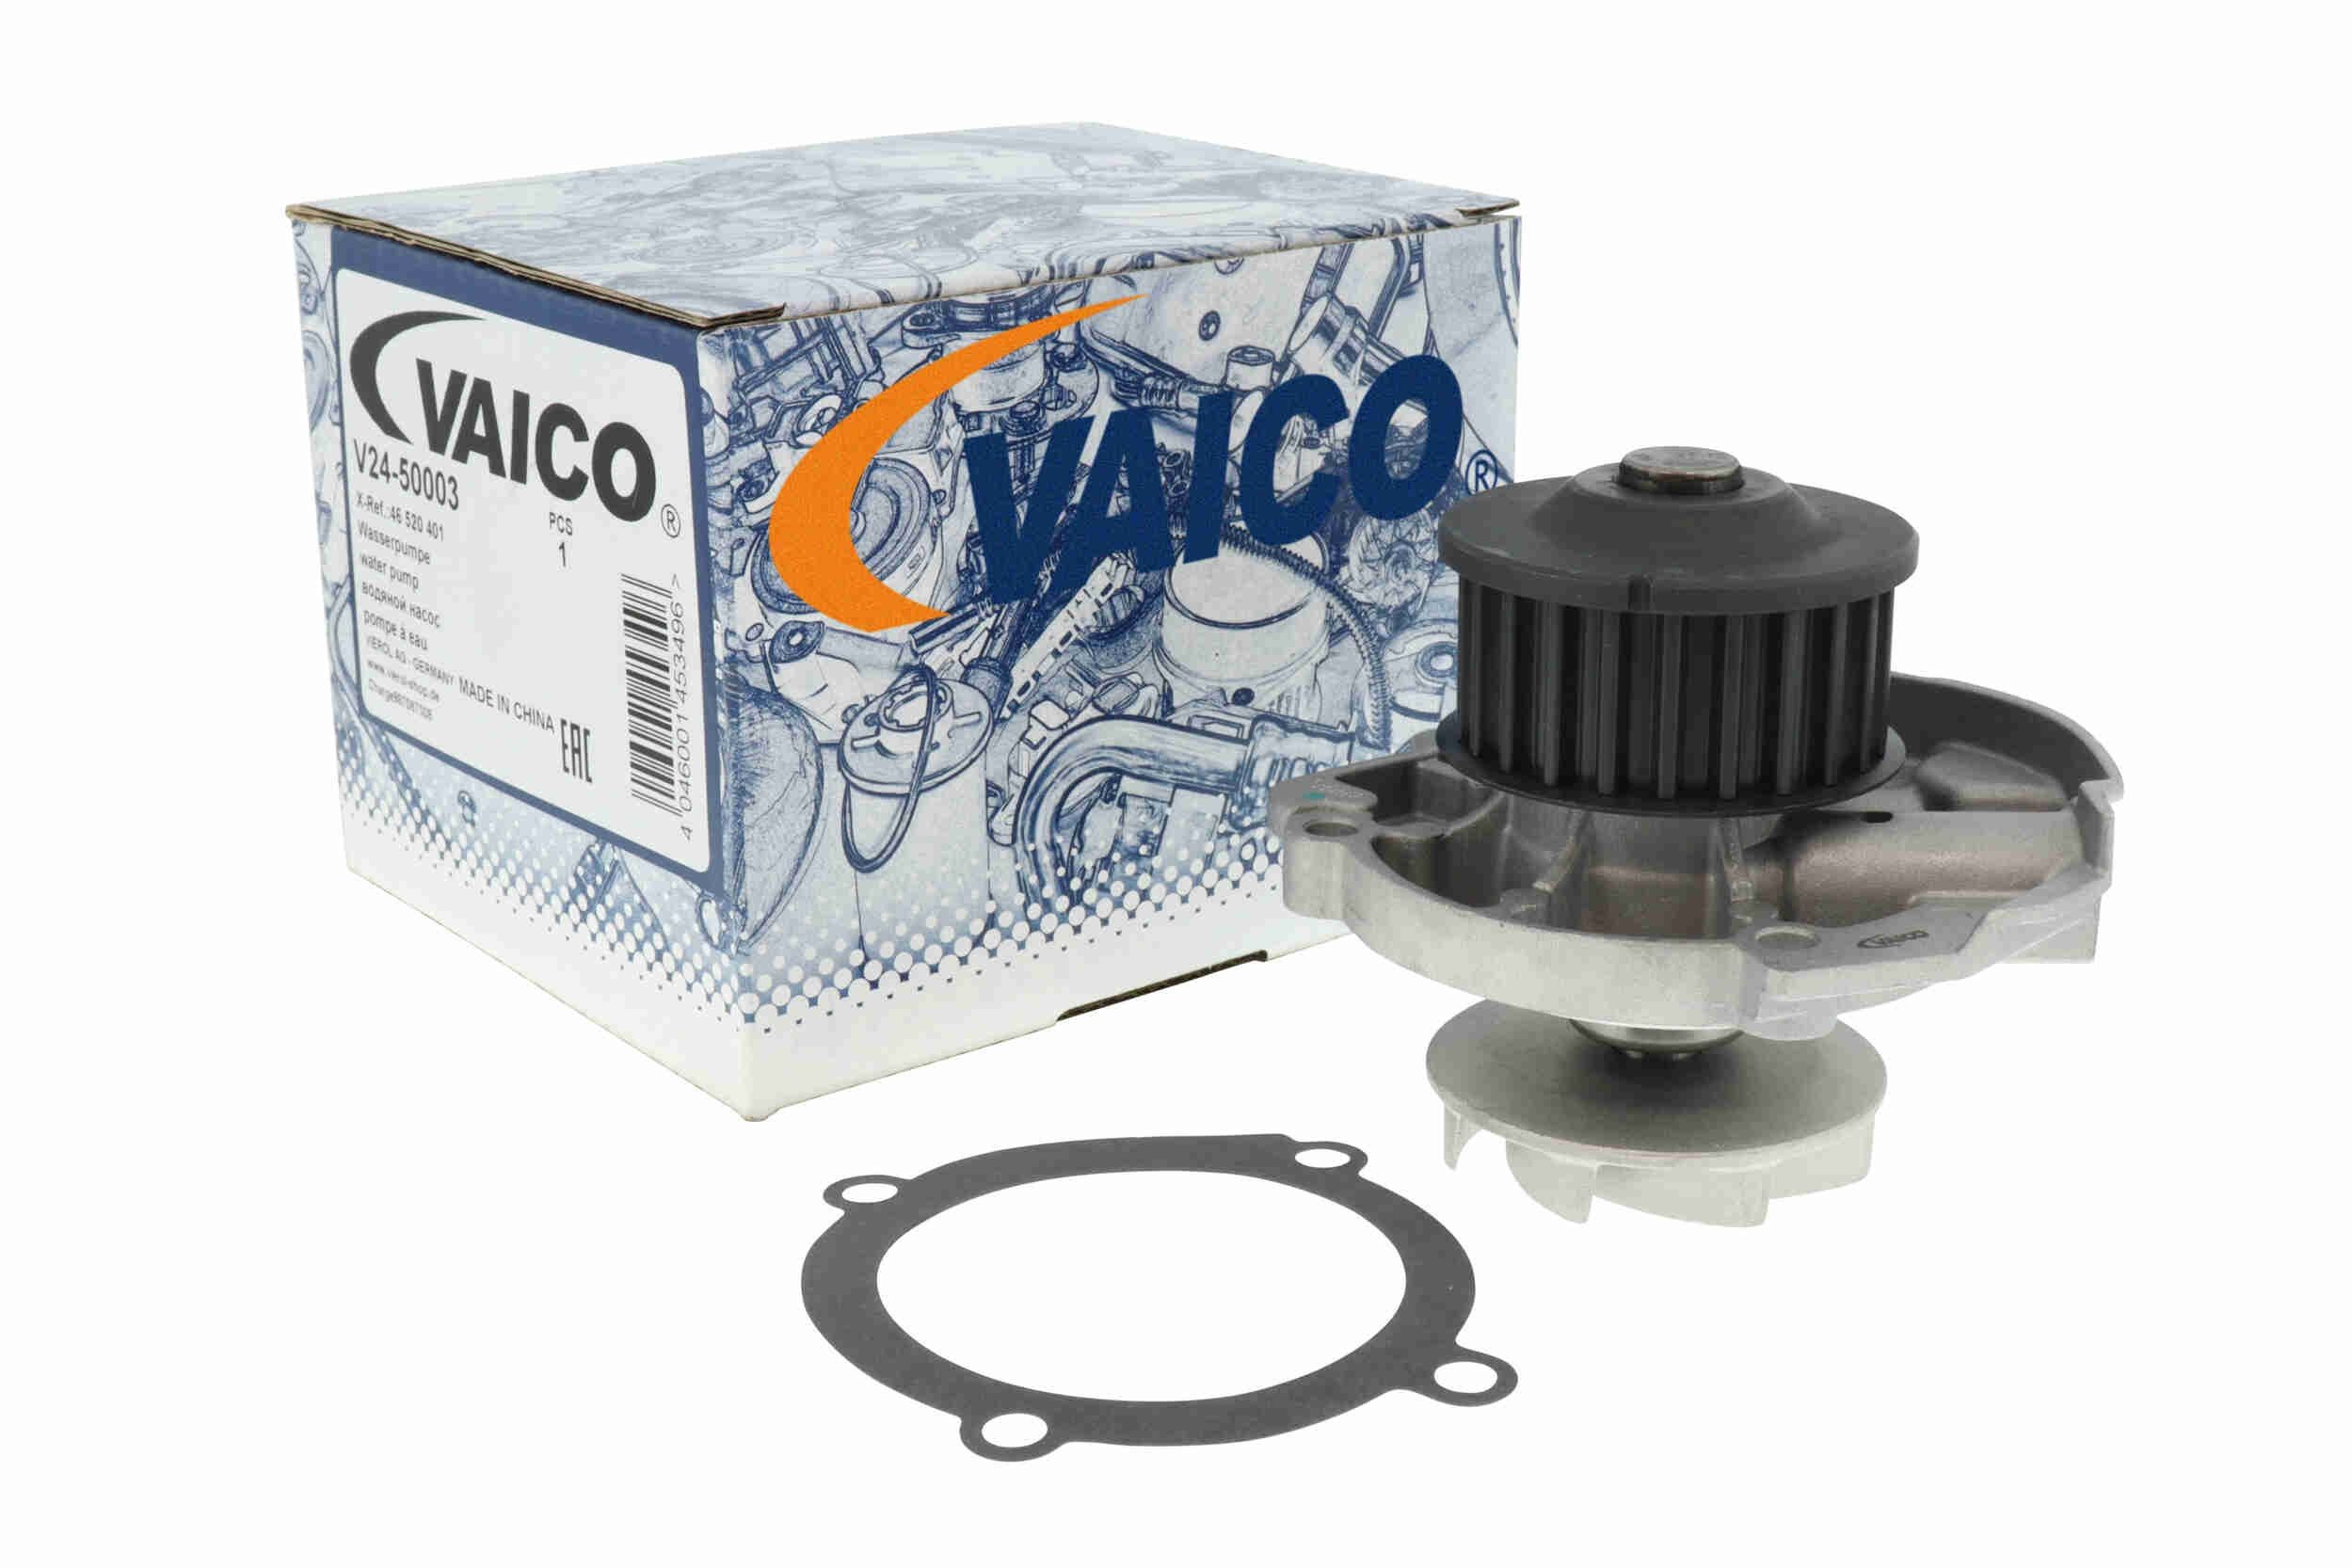 V2450003 Coolant pump VAICO V24-50003 review and test